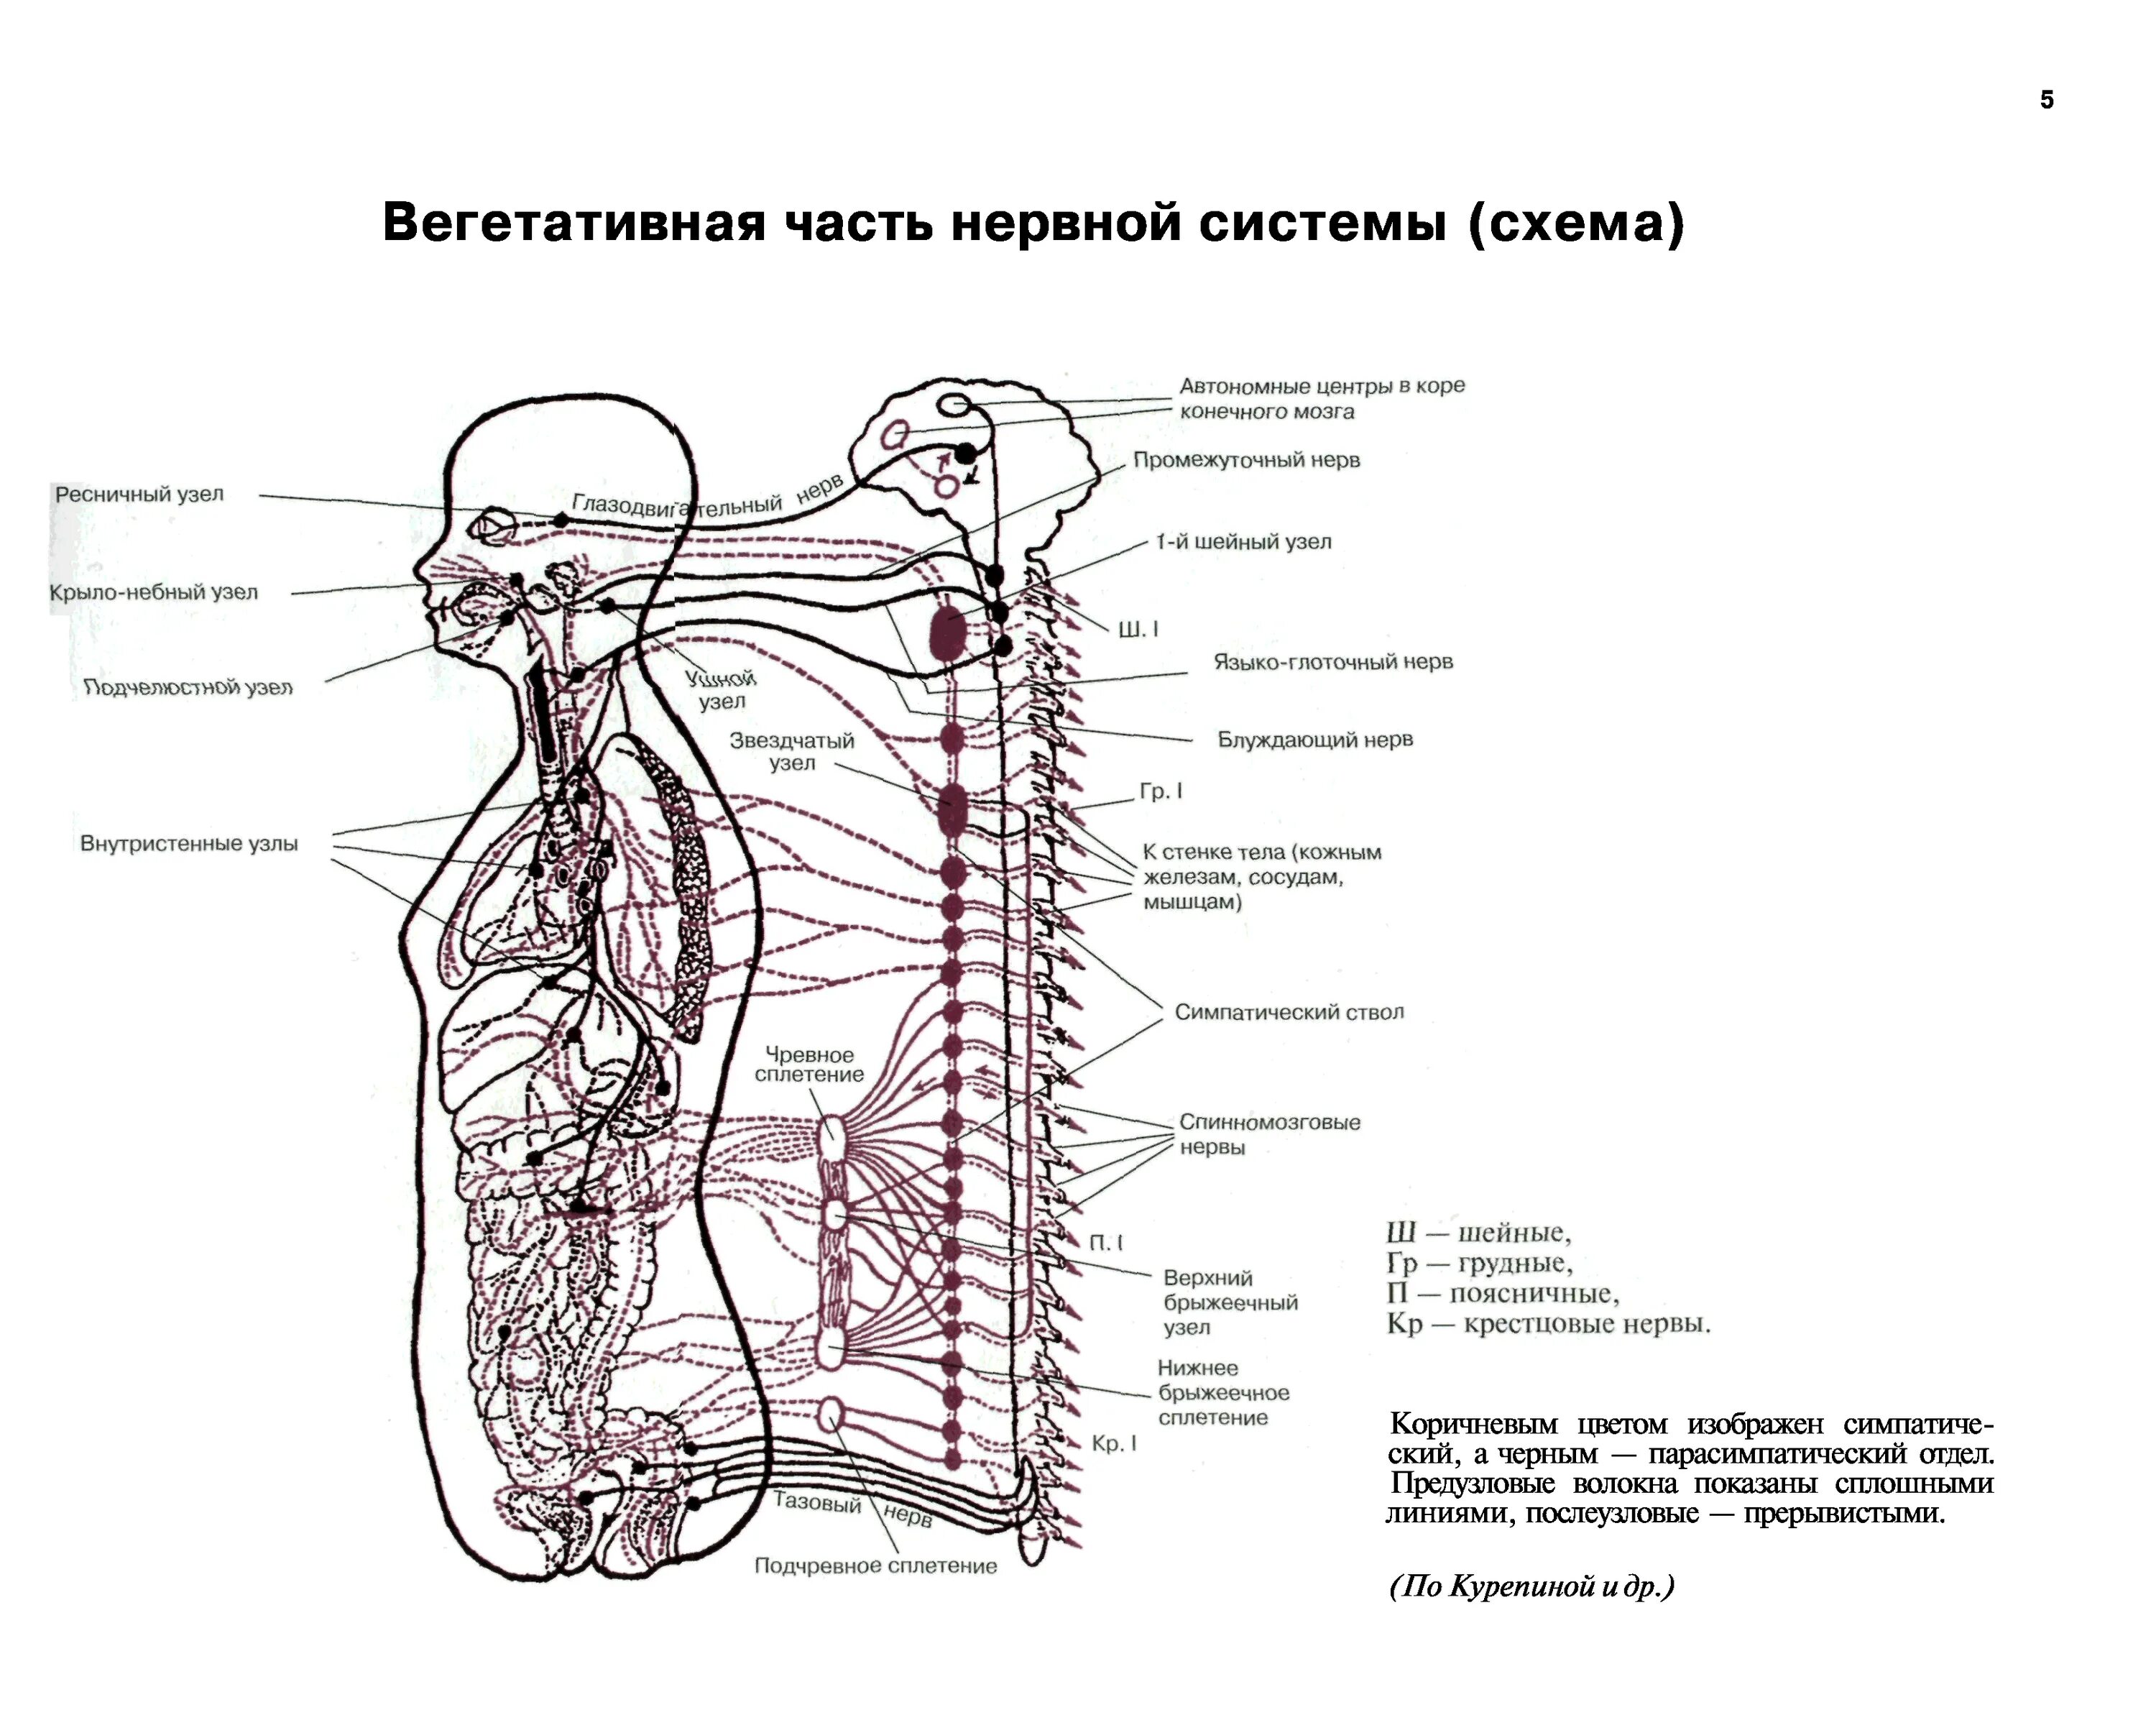 Вегетативная система человека схема. Схема вегетативной нервной системы человека. Вегетативная нервная система схема спинного мозга. Вегетативная часть нервной системы (схема).